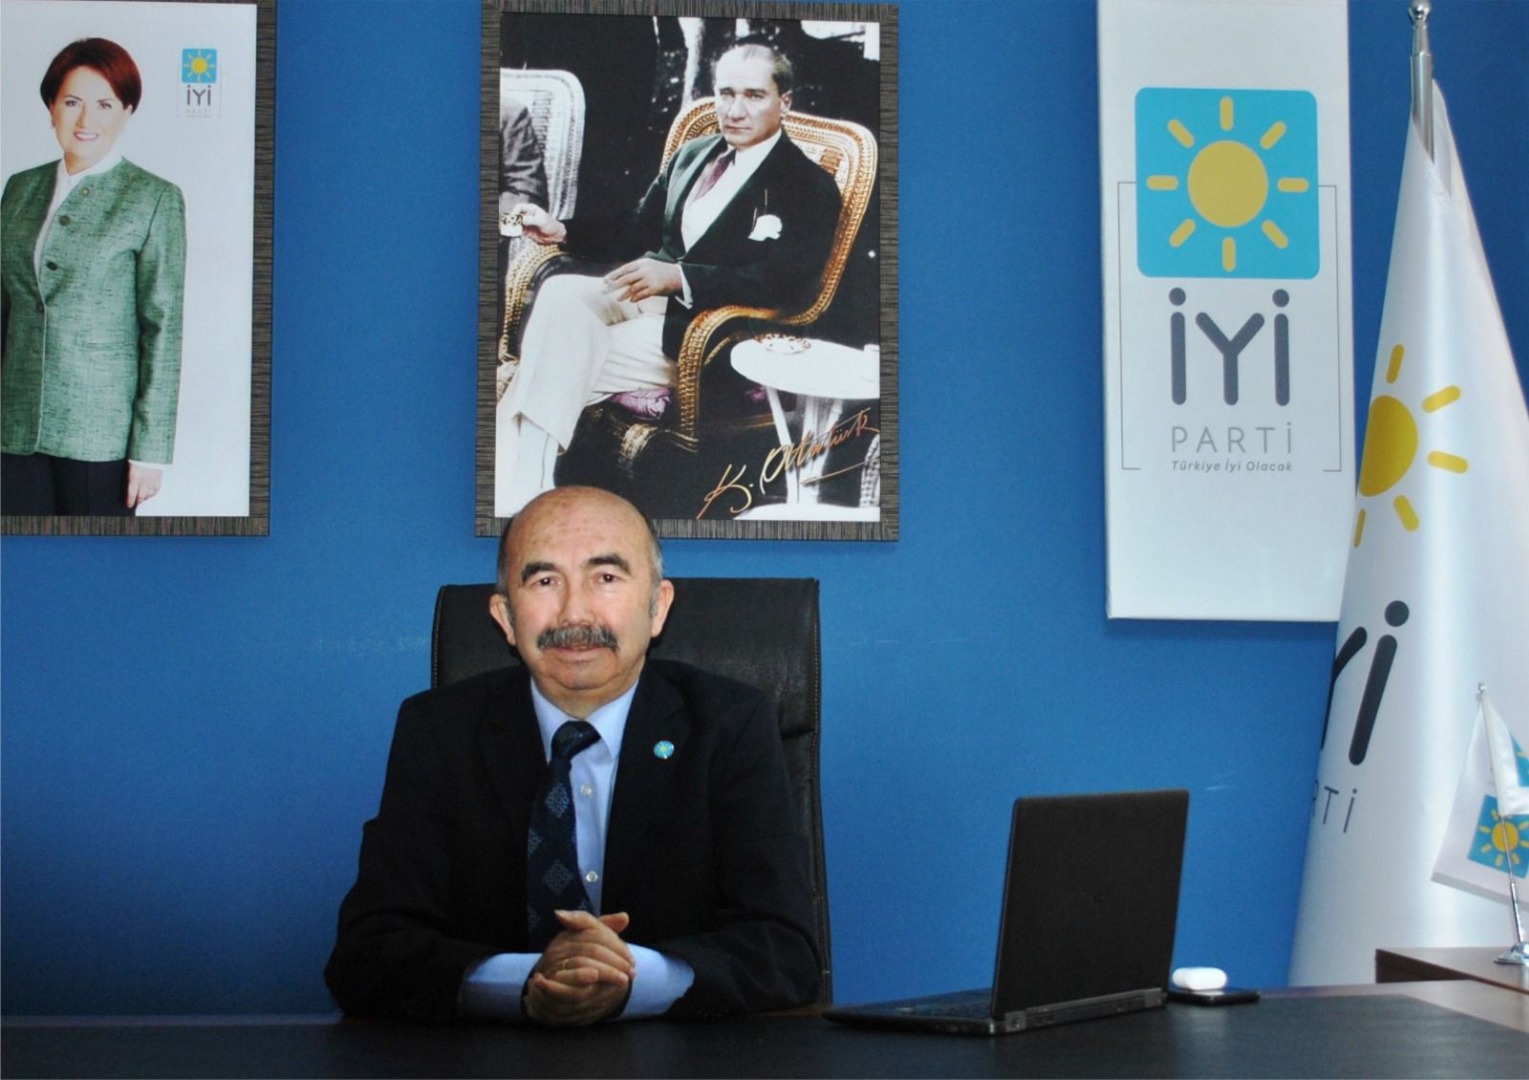 İYİ Parti İl Başkanı Abdulkadir Eroğlu'dan fındık haftası açıklaması